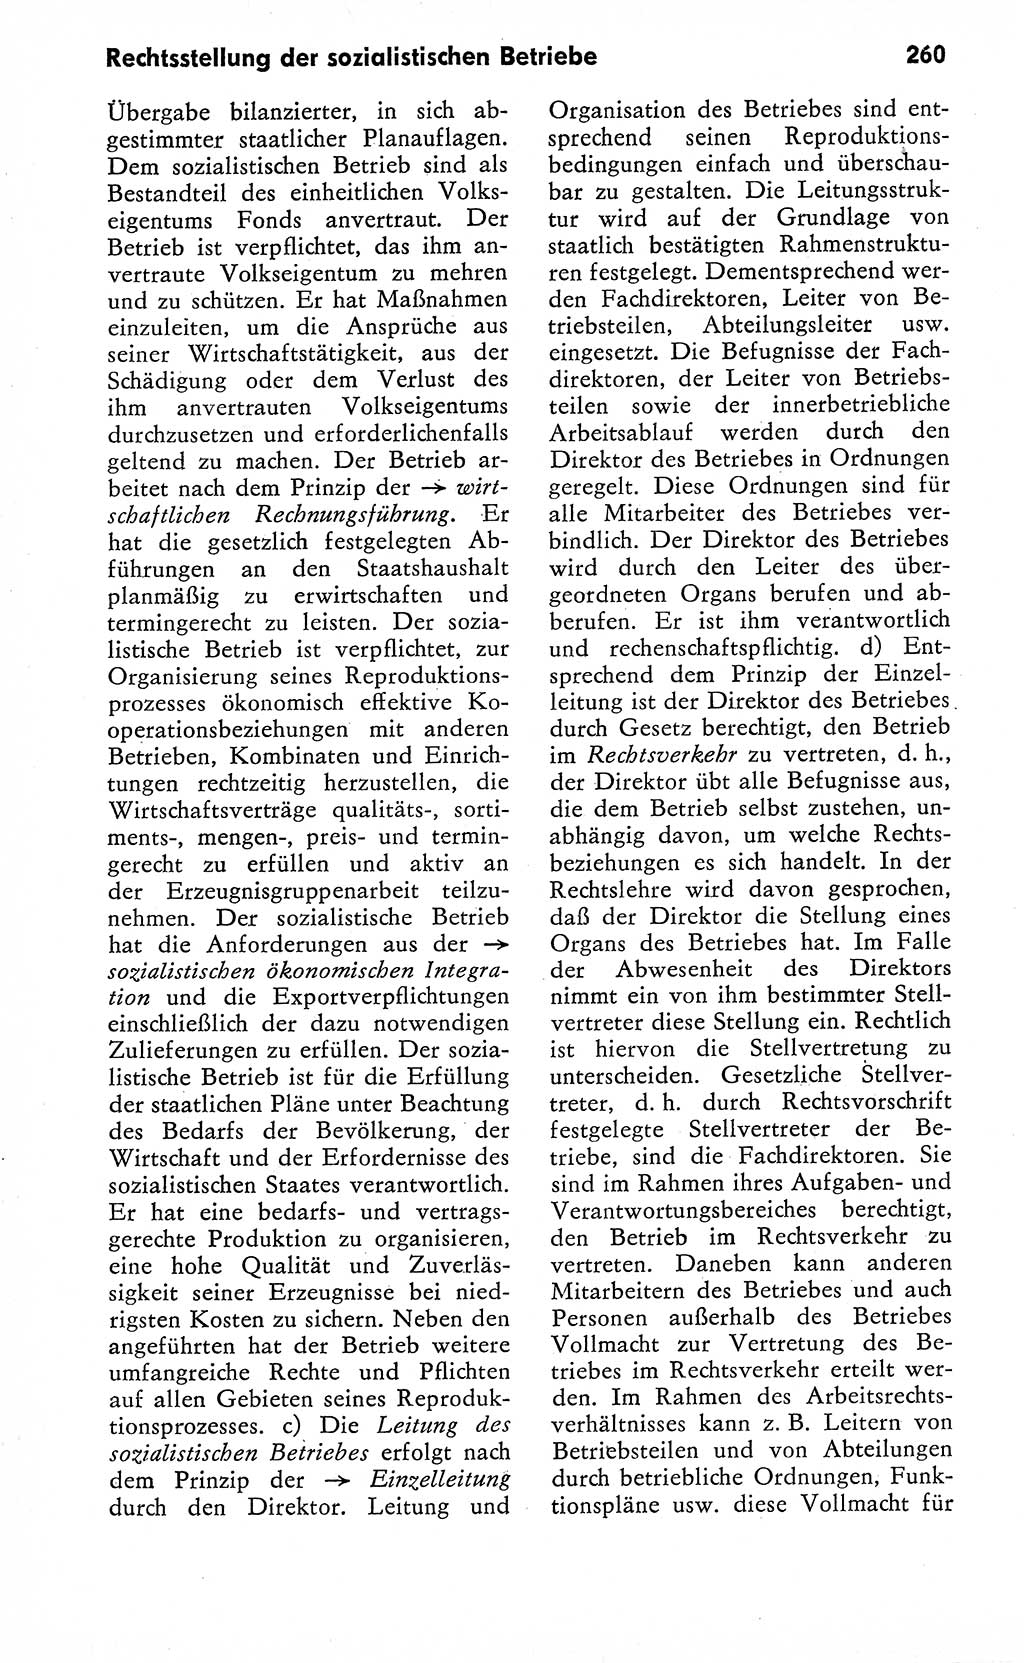 Wörterbuch zum sozialistischen Staat [Deutsche Demokratische Republik (DDR)] 1974, Seite 260 (Wb. soz. St. DDR 1974, S. 260)